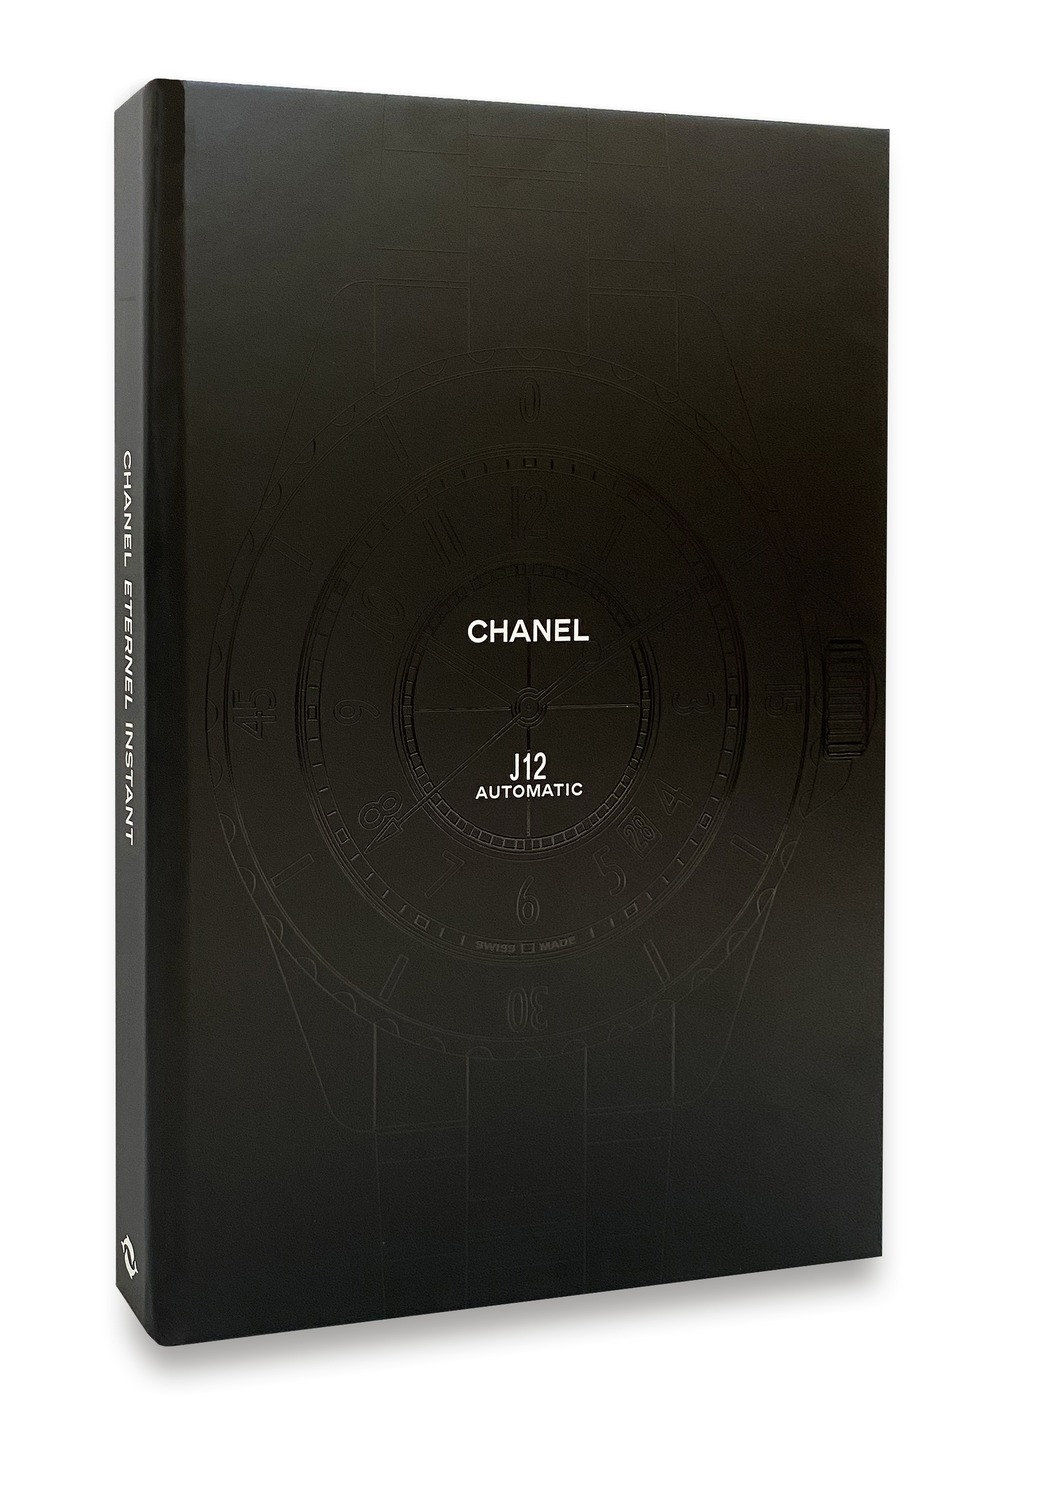 Chanel présente le livre « CHANEL INSTANT ETERNEL »